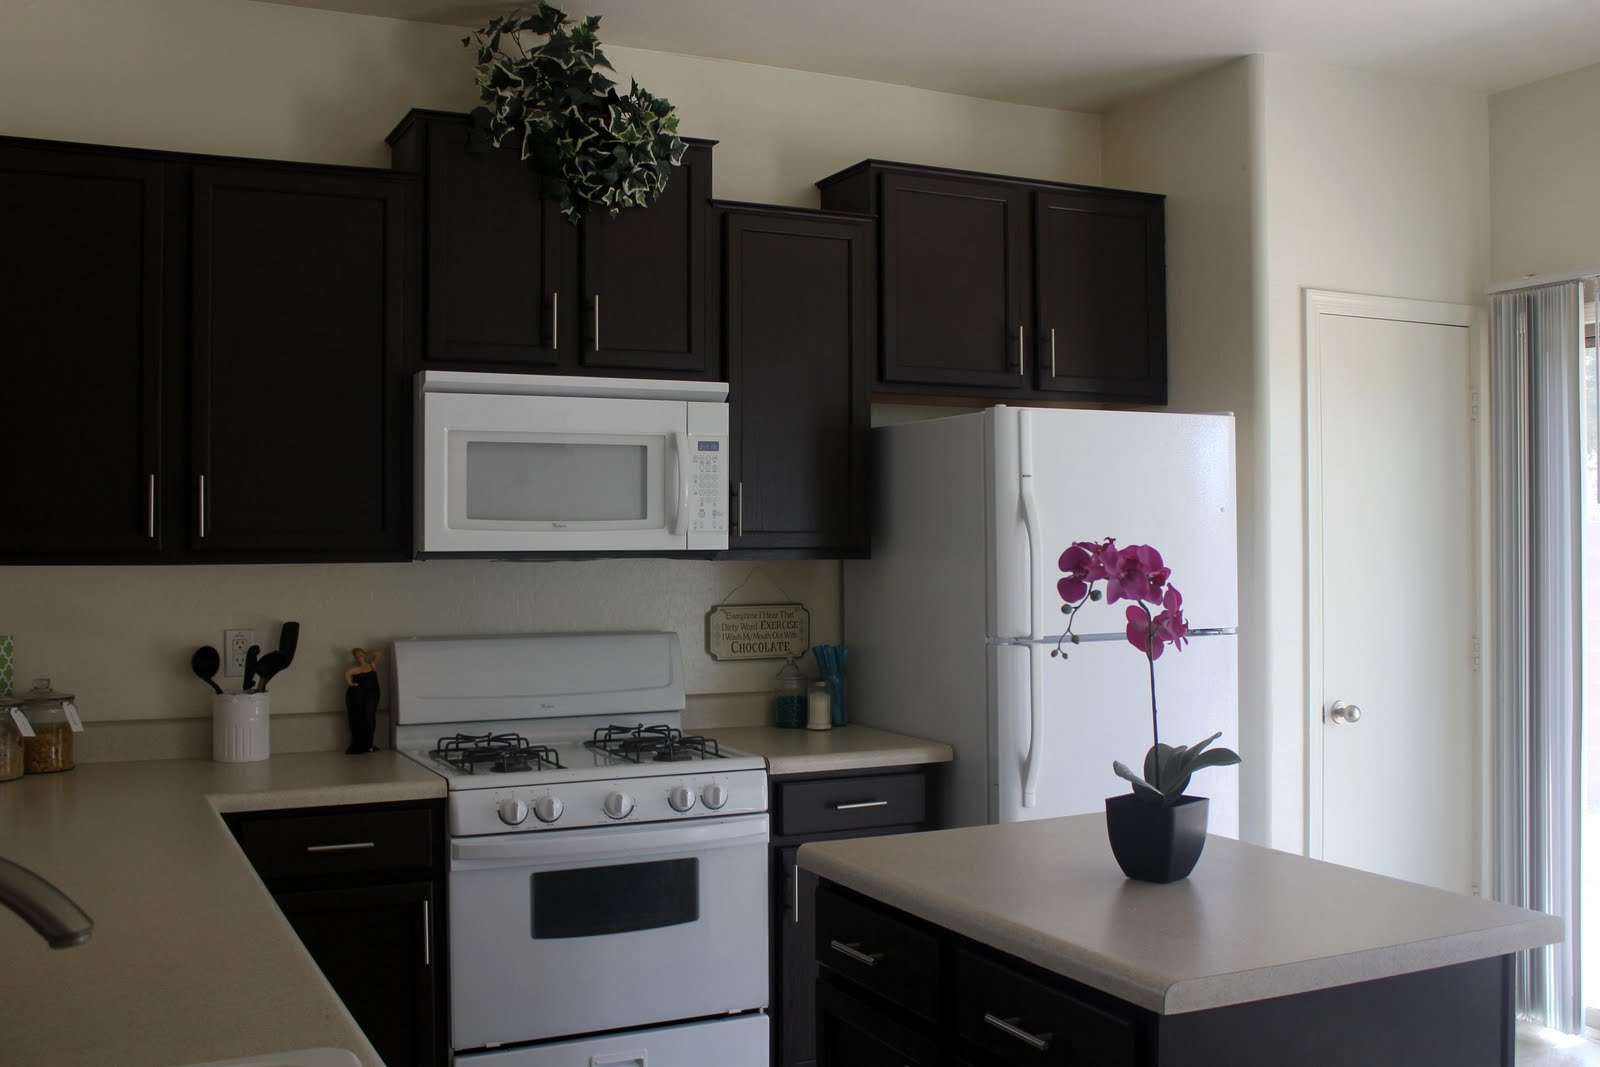 Behr Paint Kitchen Cabinets | Home Decorating IdeasBathroom Interior Design